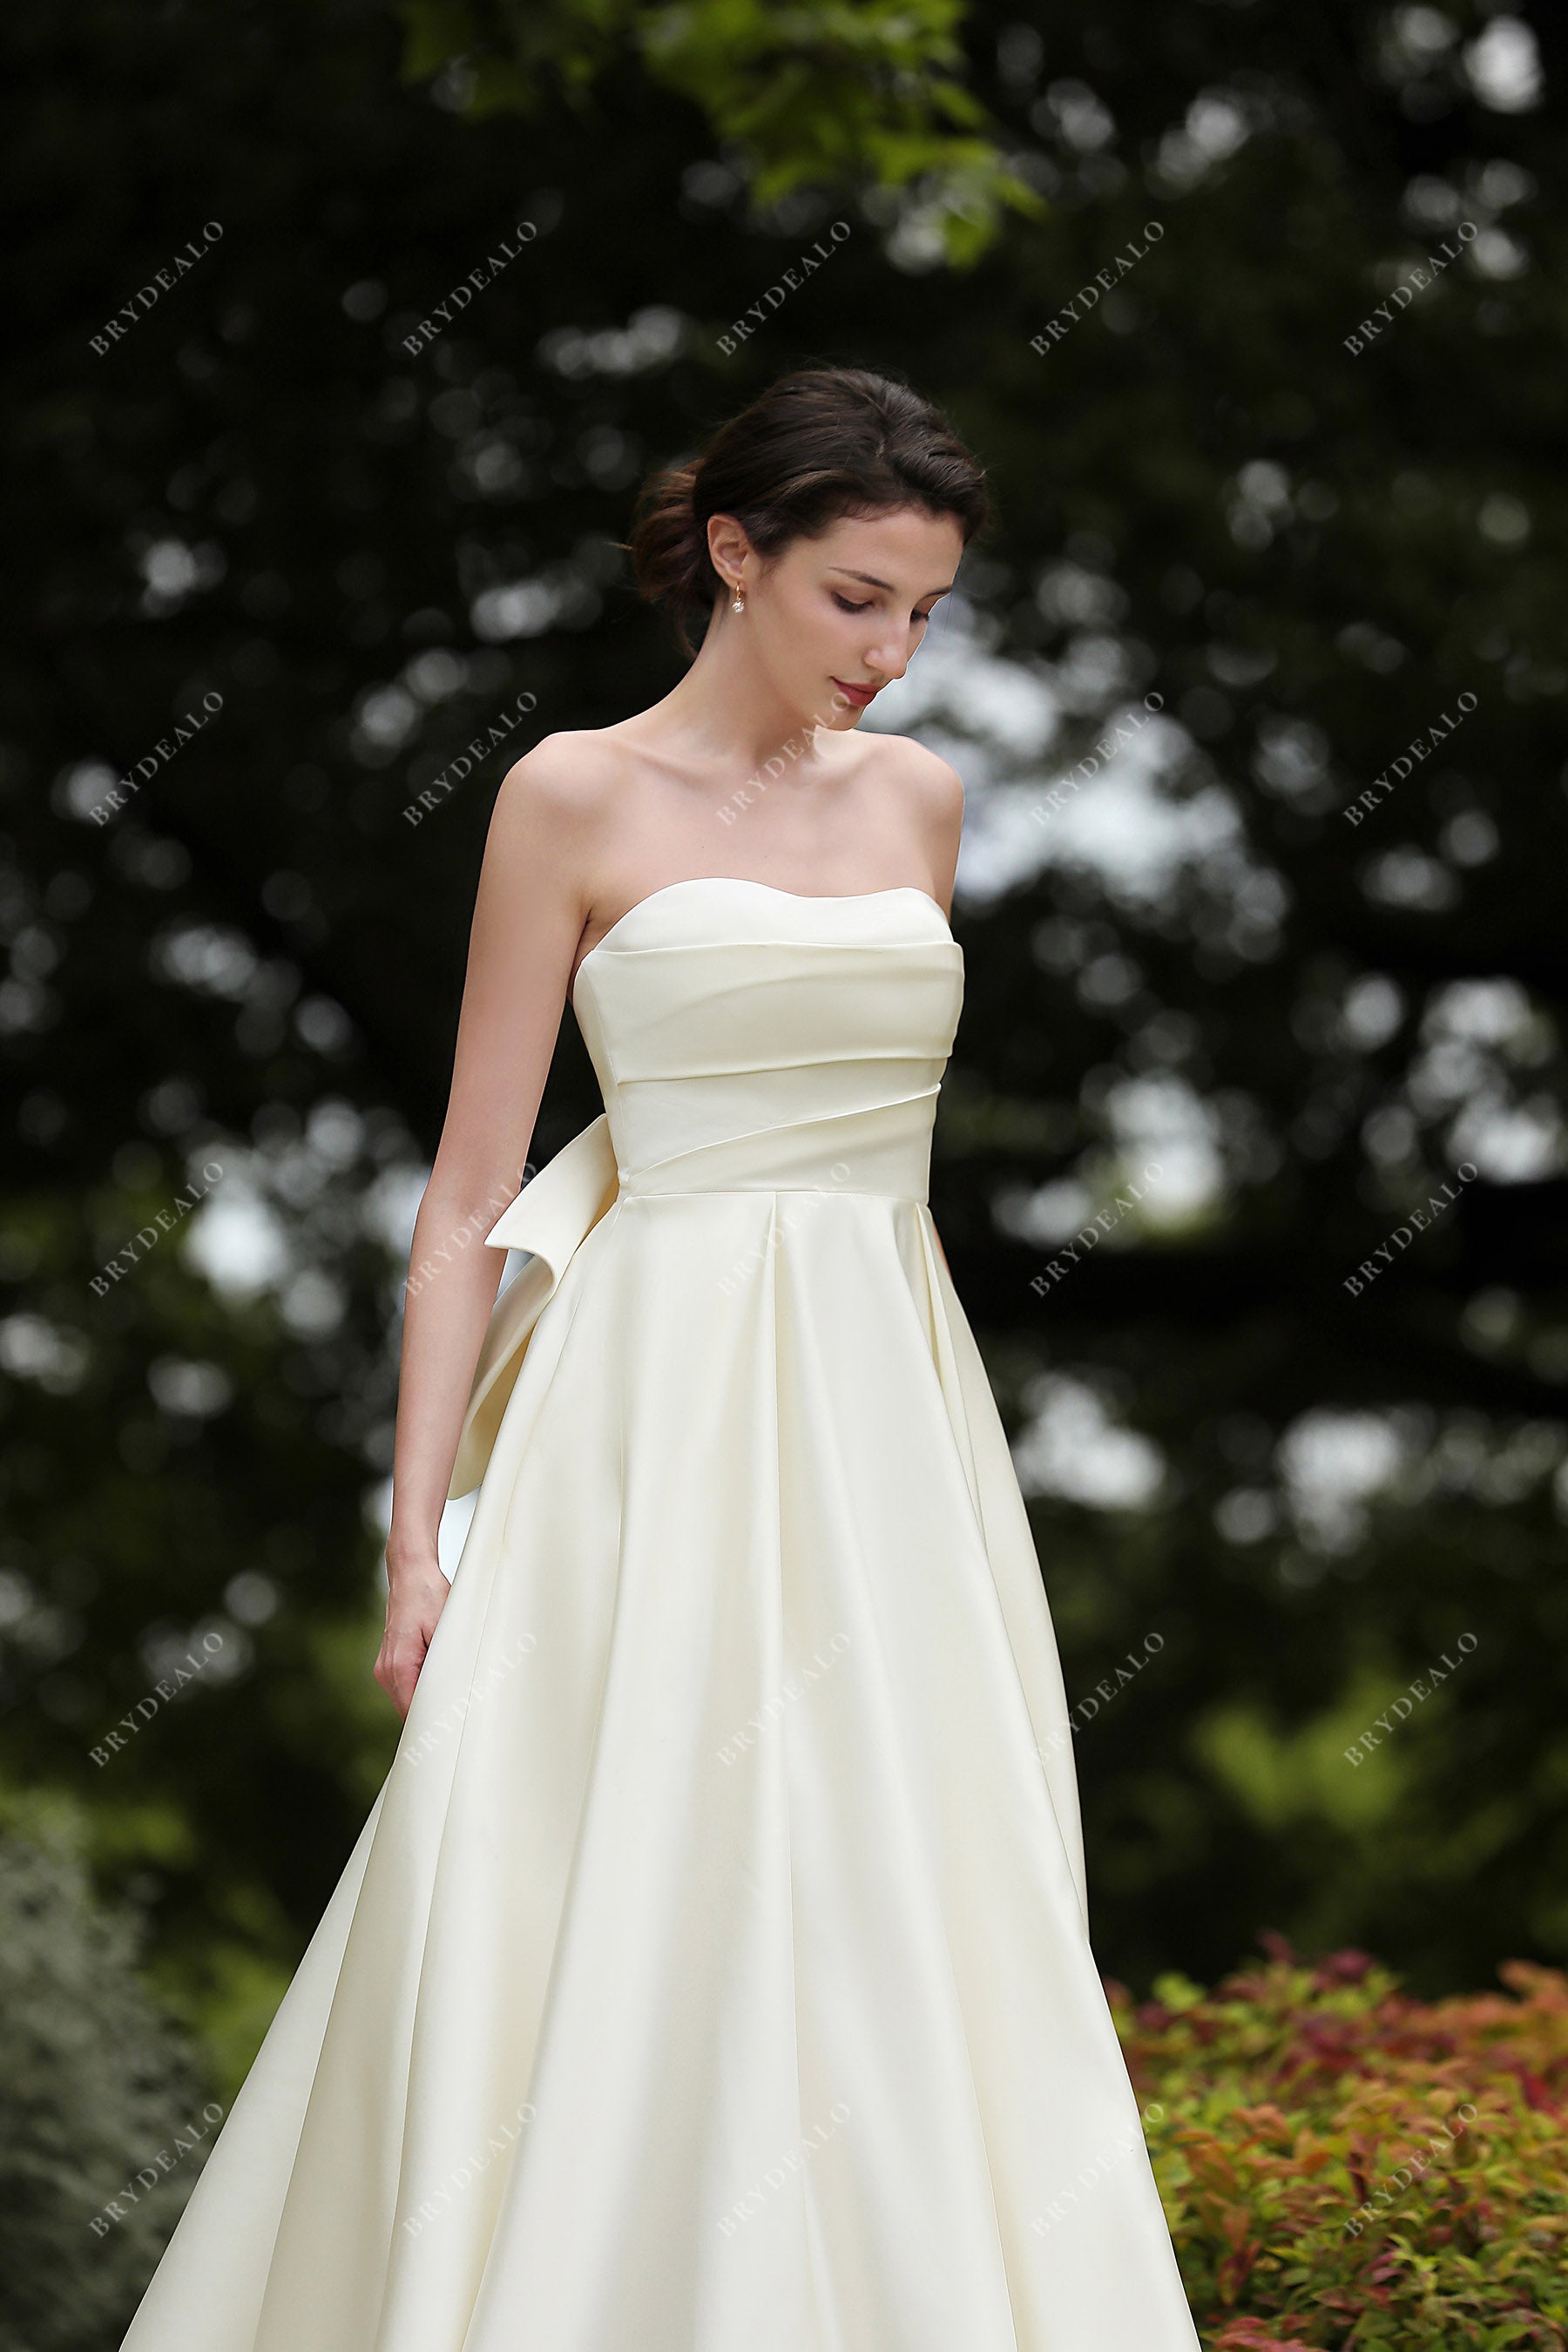 Off the Shoulder Satin Wedding Dress, Minimalist Wedding Gown With Bow,  Sheath Simple Wedding Dress PATRICIA - Etsy | Wedding dresses, Wedding  dresses simple, Satin wedding